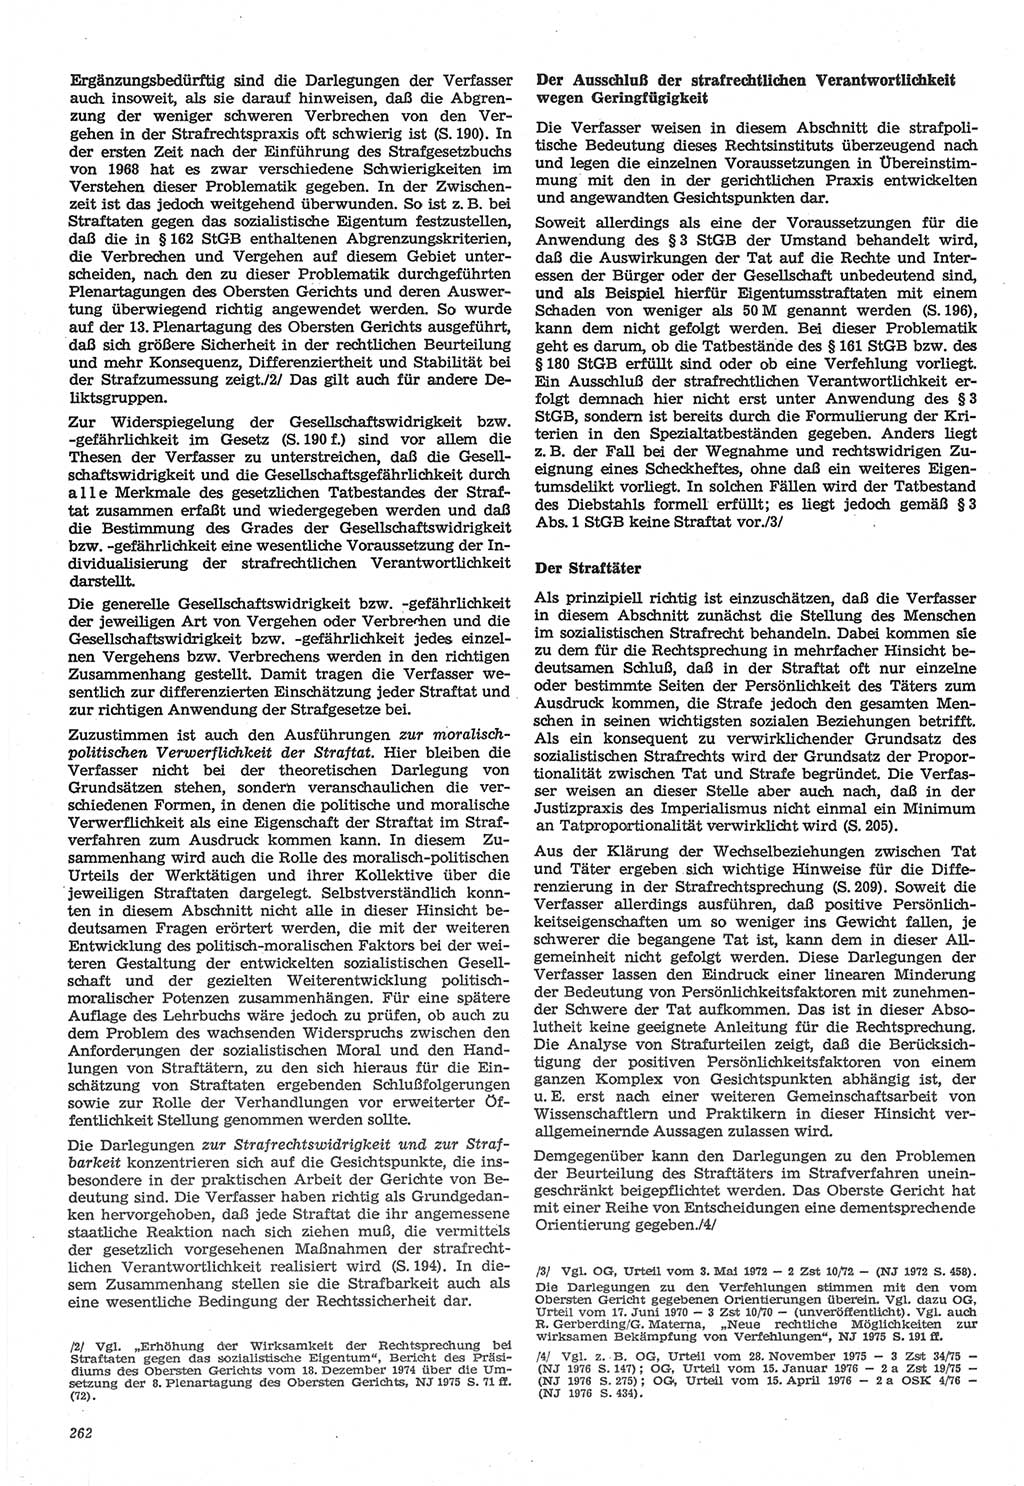 Neue Justiz (NJ), Zeitschrift für Recht und Rechtswissenschaft-Zeitschrift, sozialistisches Recht und Gesetzlichkeit, 31. Jahrgang 1977, Seite 262 (NJ DDR 1977, S. 262)